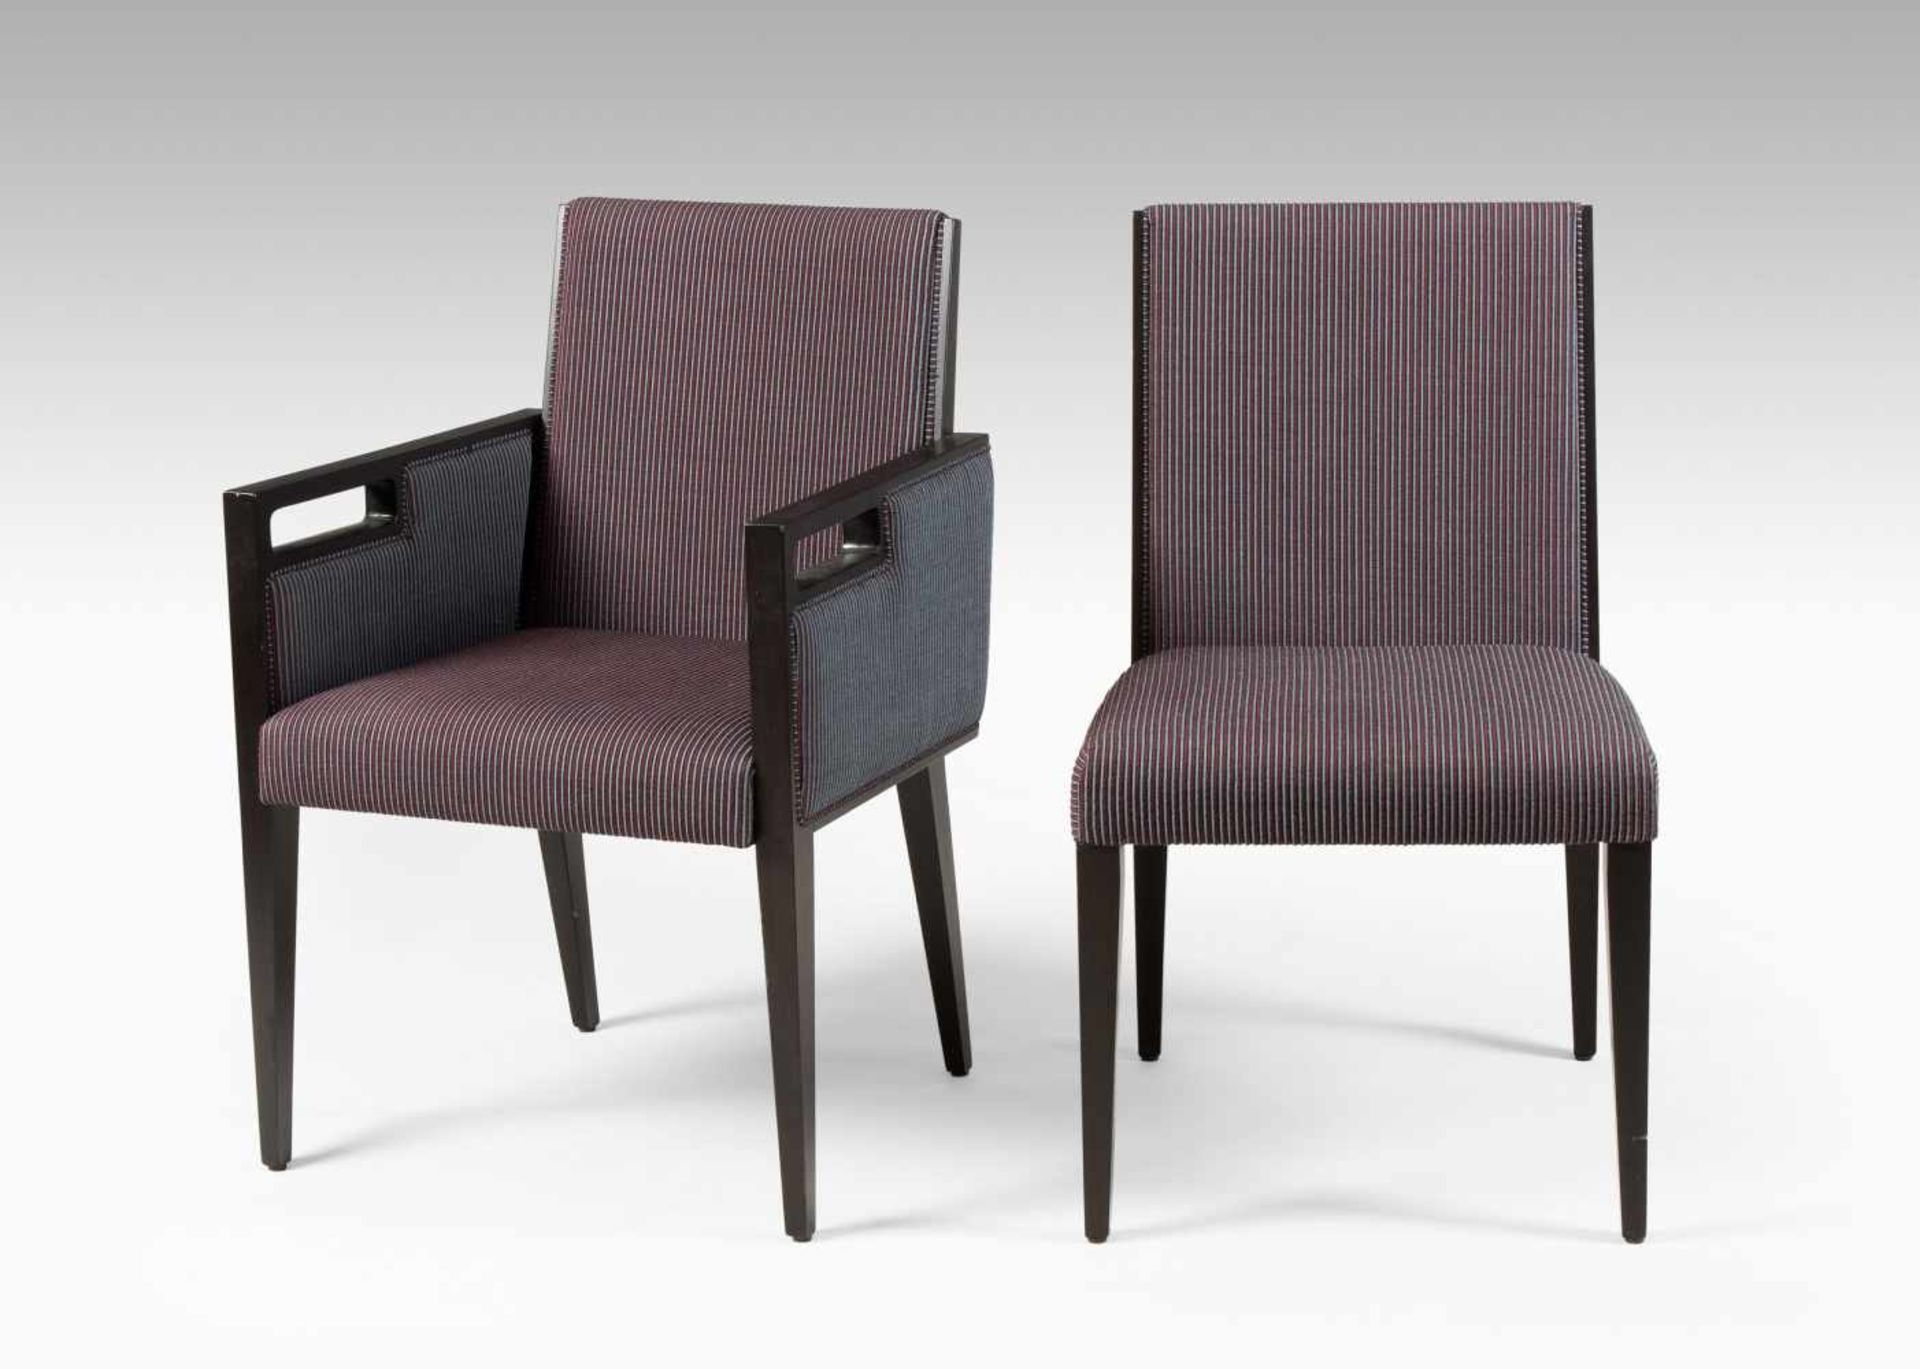 Werther Toffoloni2 Stühle (mit und ohne Armlehne) "ELIPS XCAP". Entwurf: 2011. Hersteller: